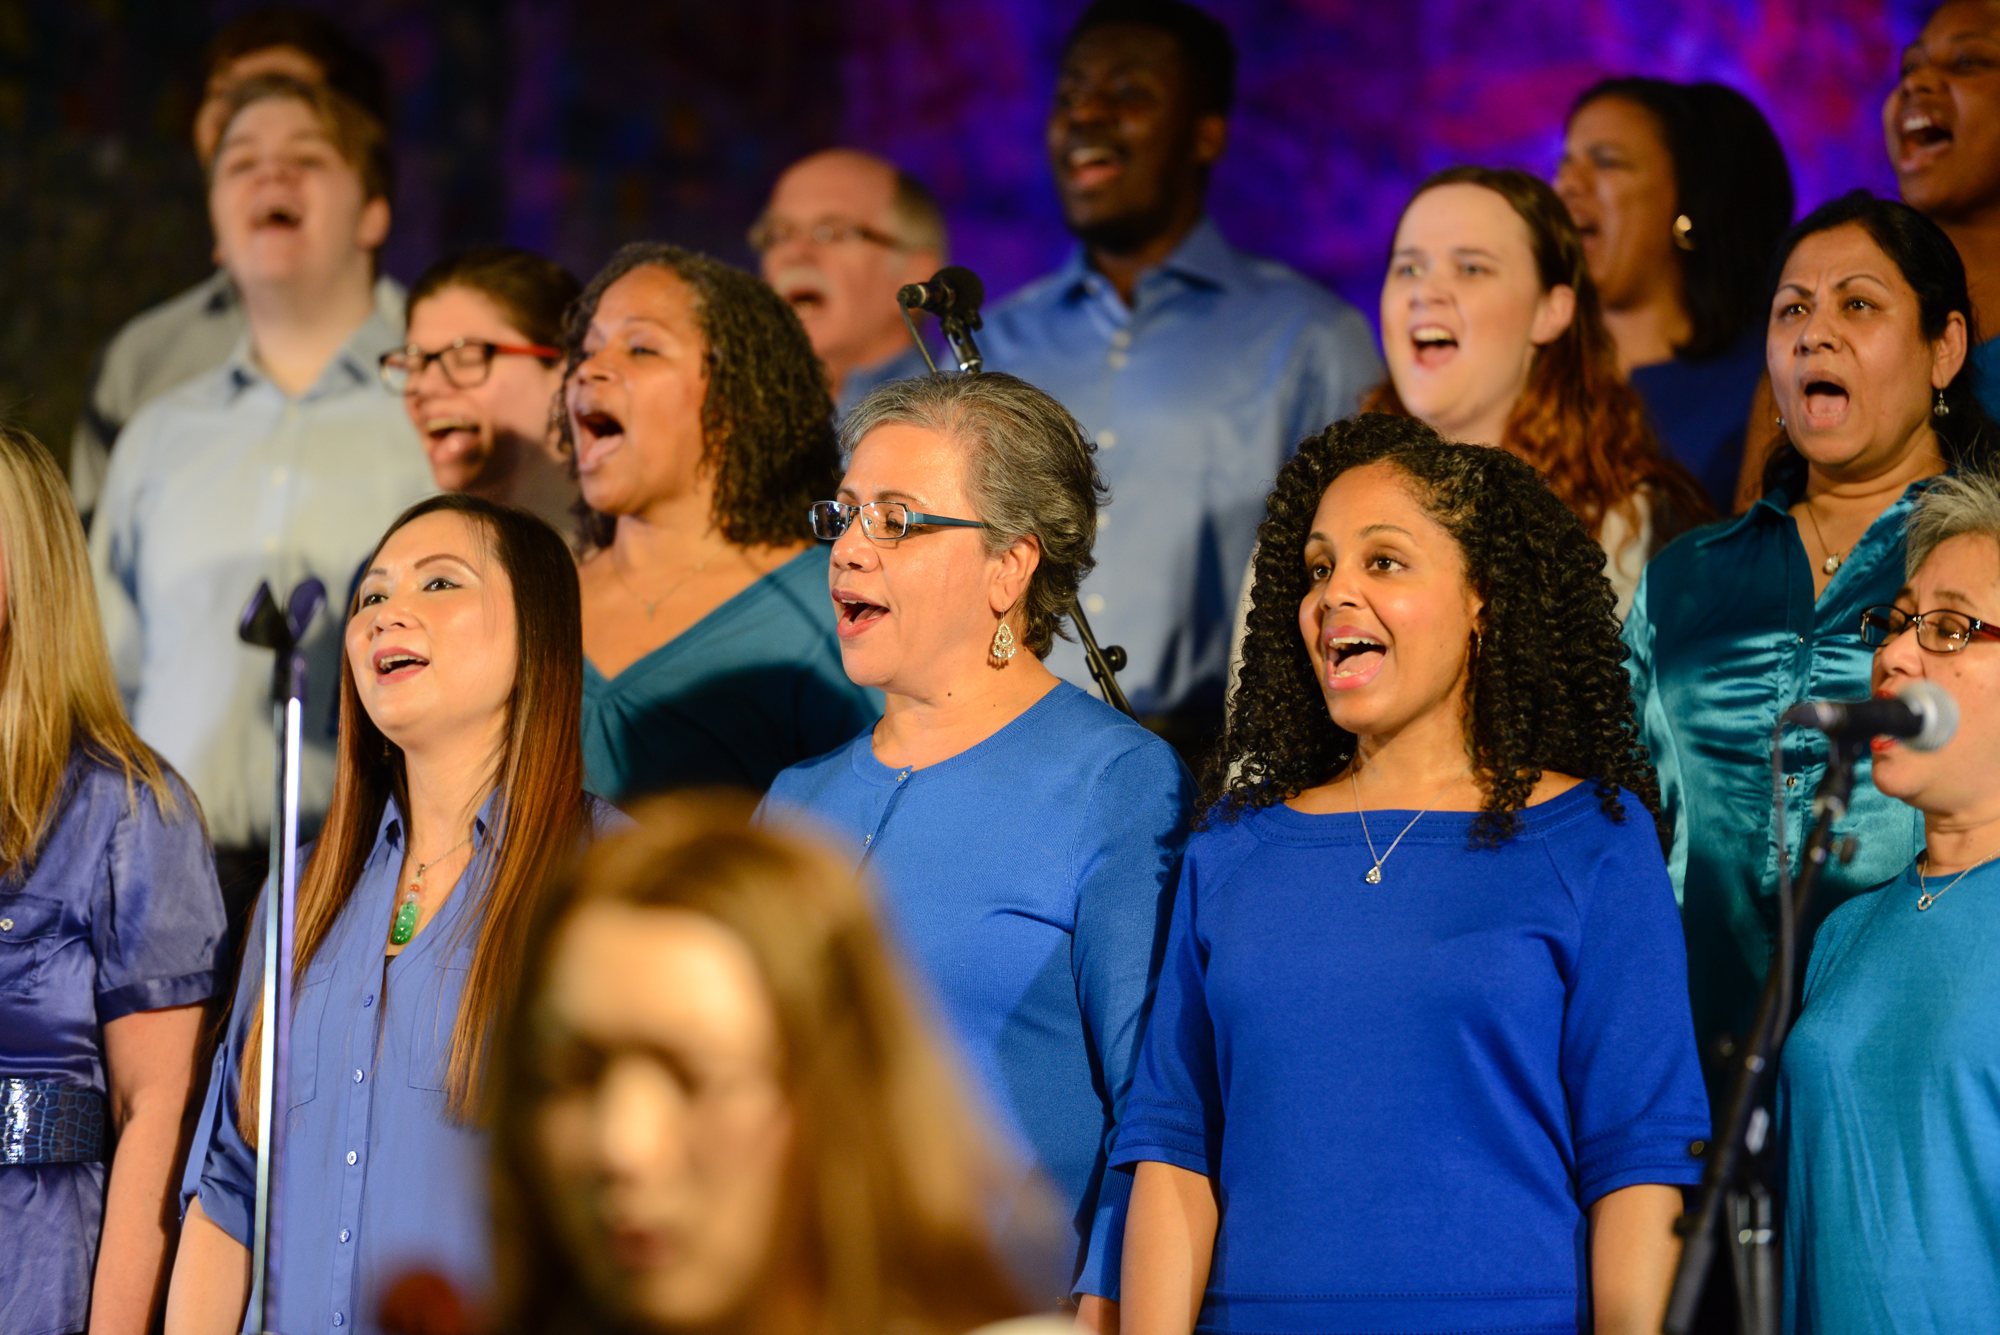 Tyndale Community Choir